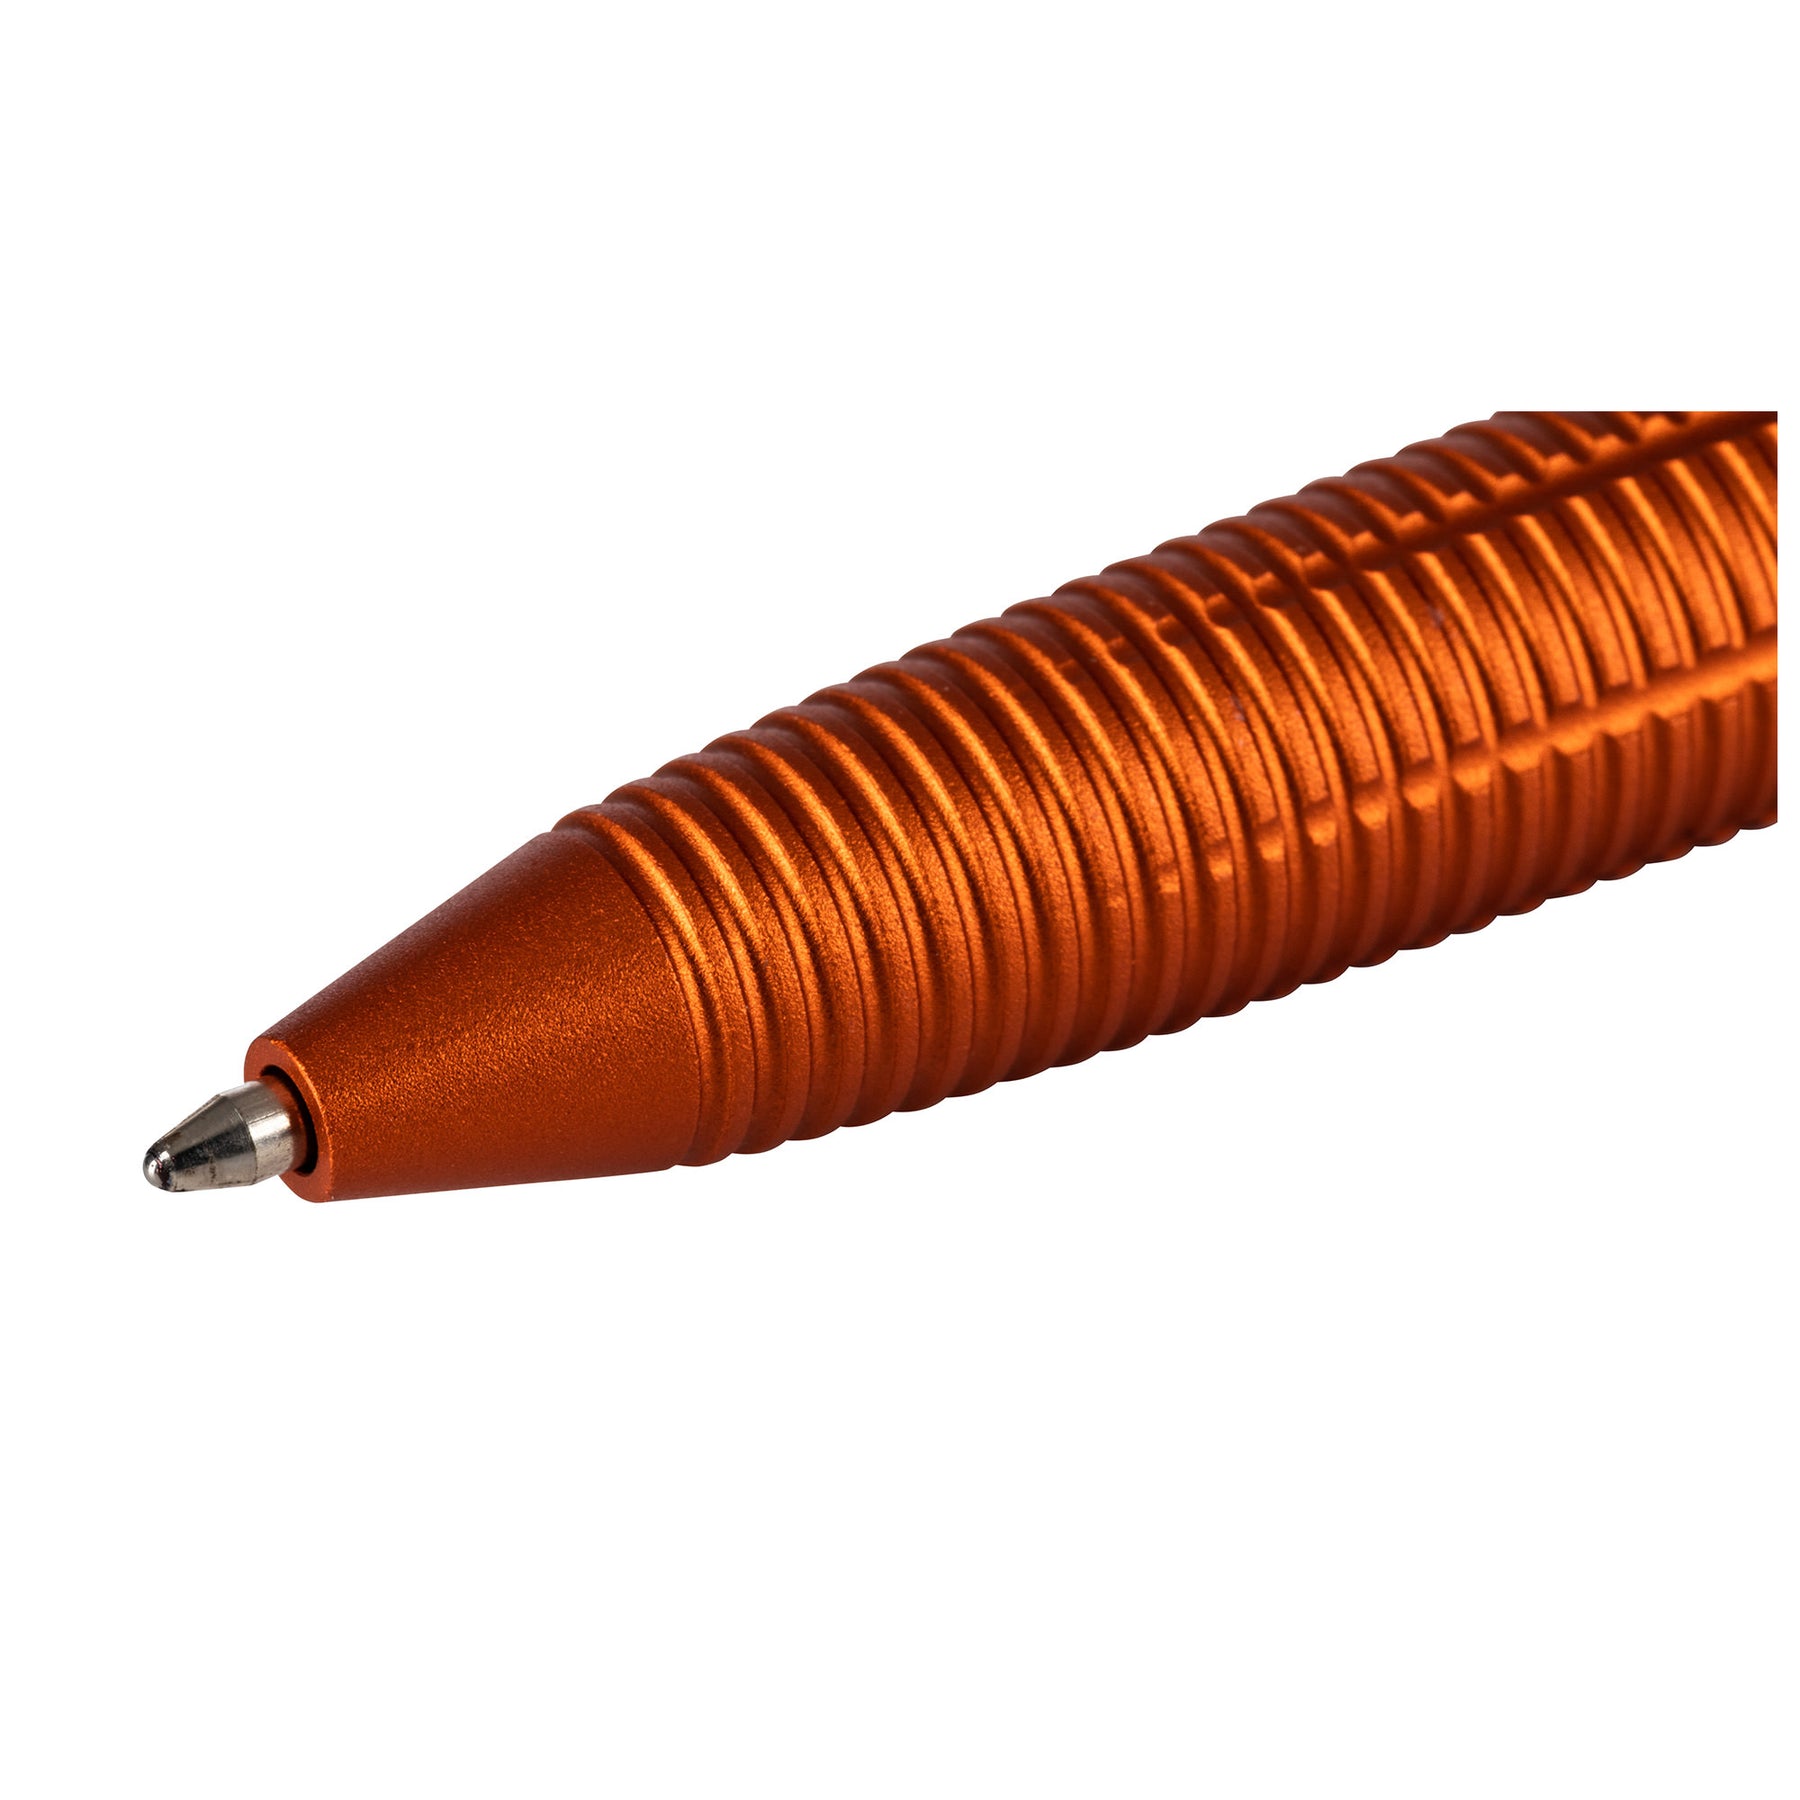 Penna Tattica kubaton 5.11 Tactical WTHRD ORANGE (arancione)- vista punta esposta